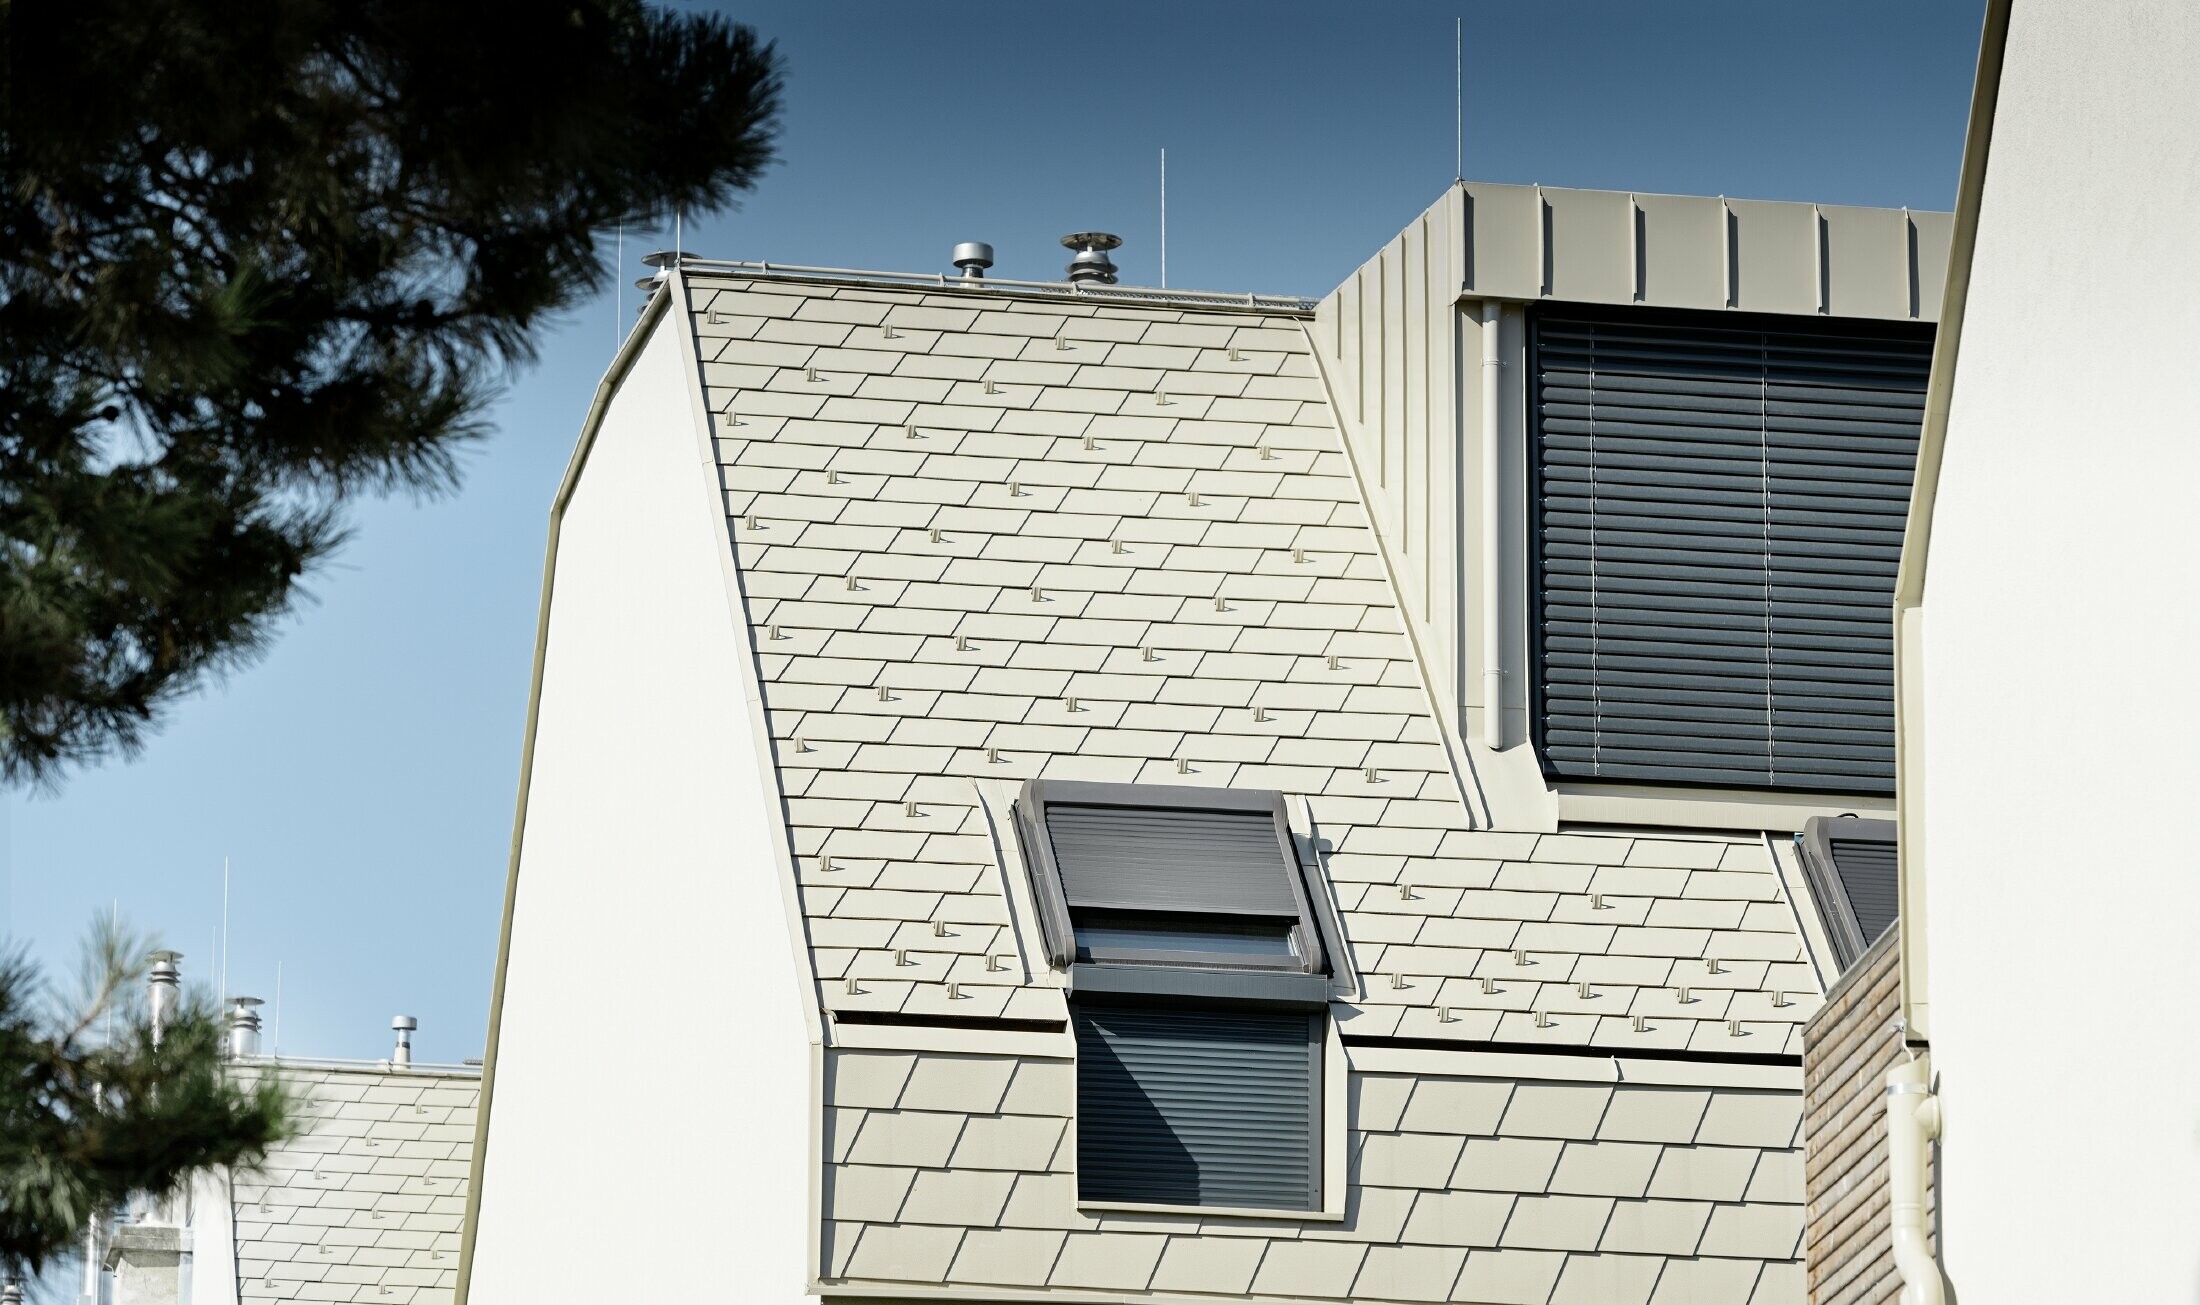 neue Wohnhausanlage mit großer Aluminium Dachfläche und vielen Dachflächenfenstern 